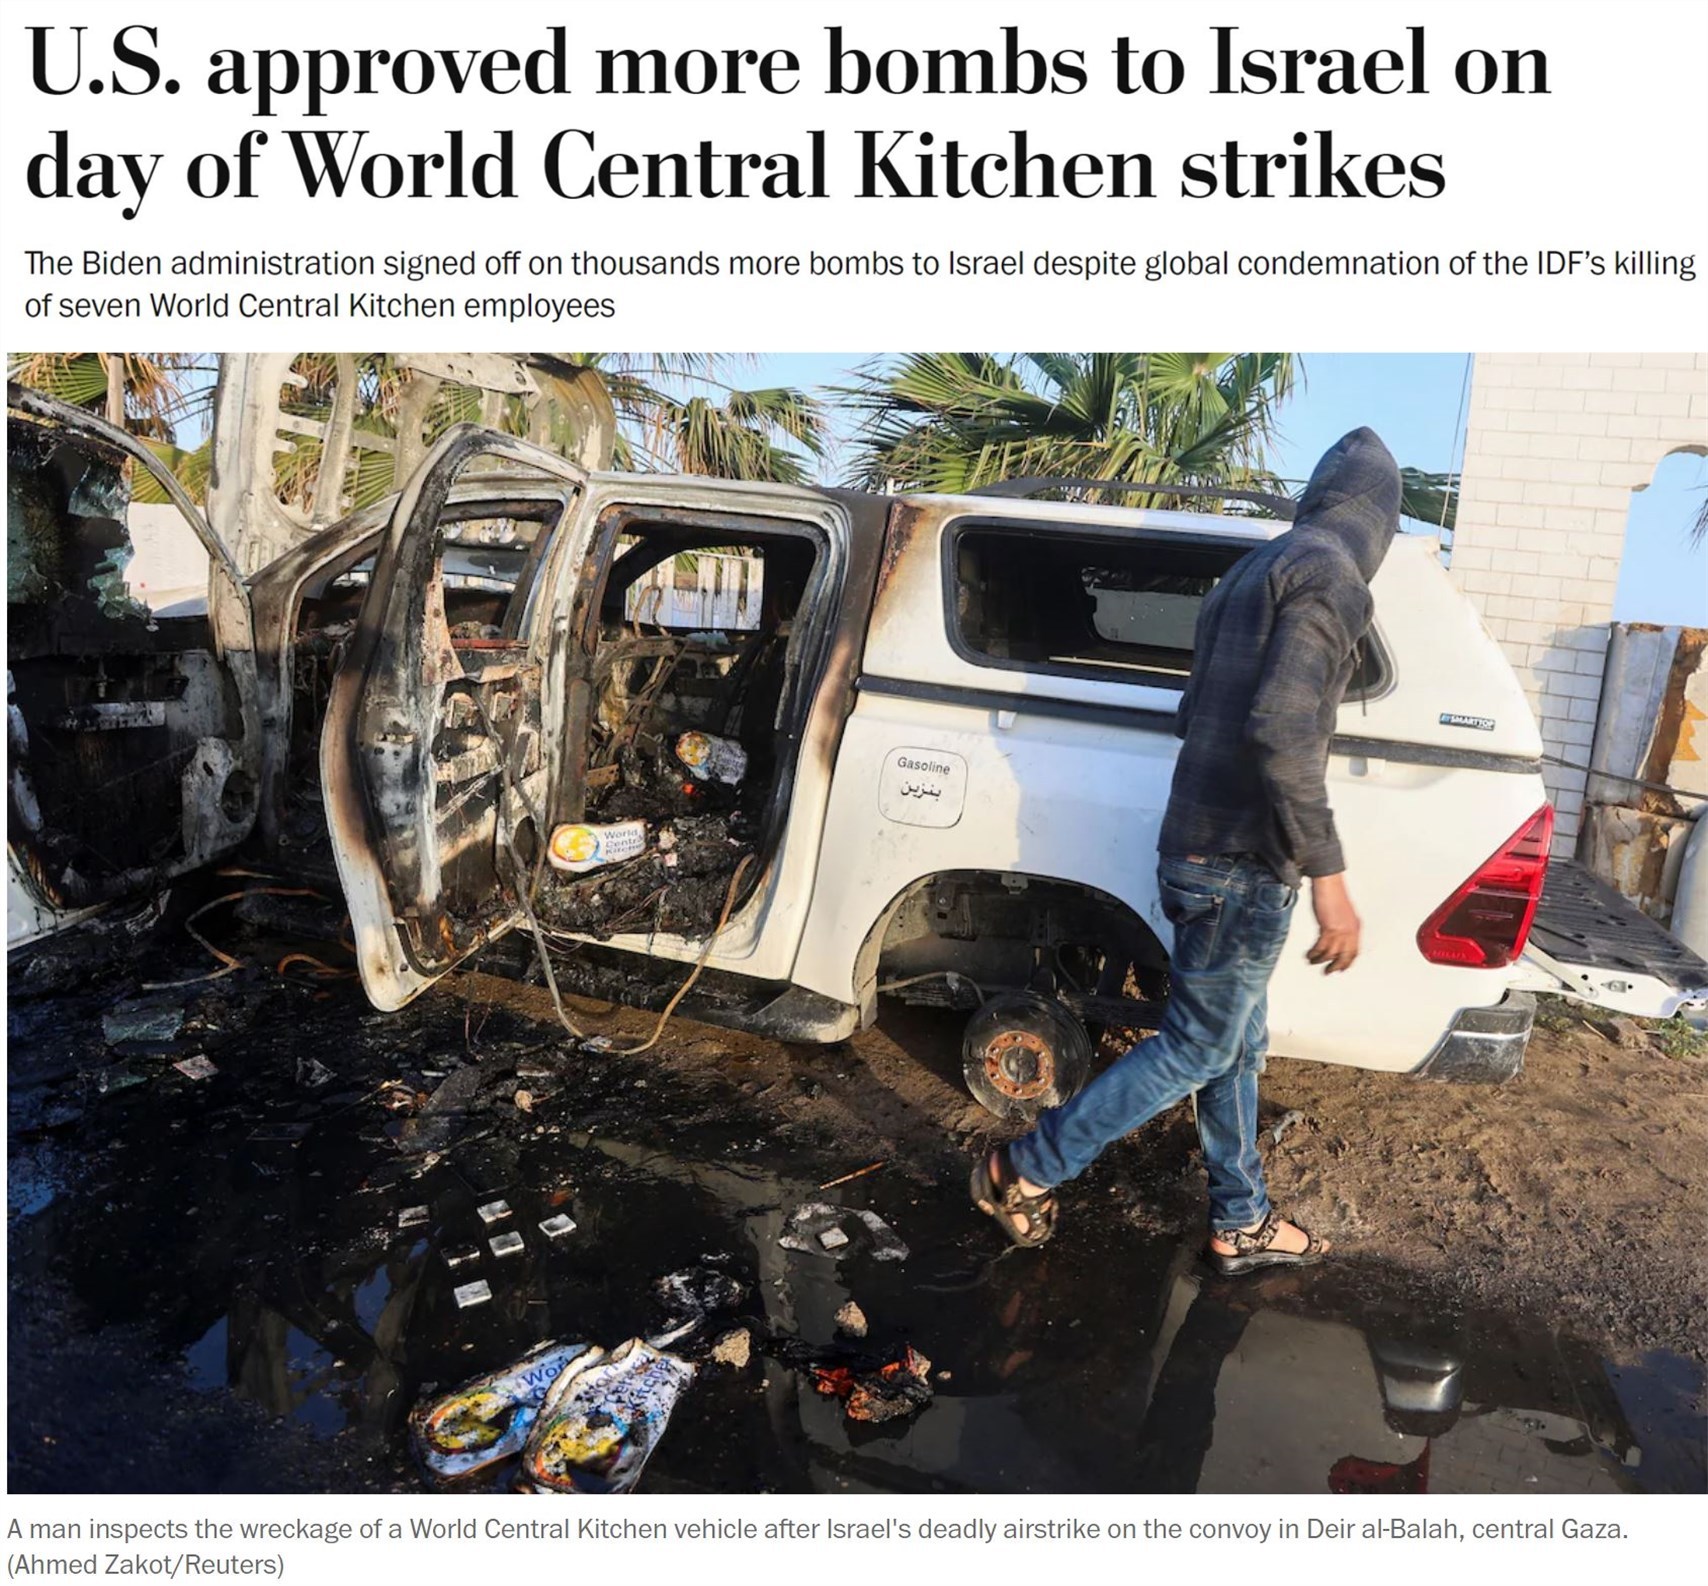 “美国的加沙人道主义战略正在失败”